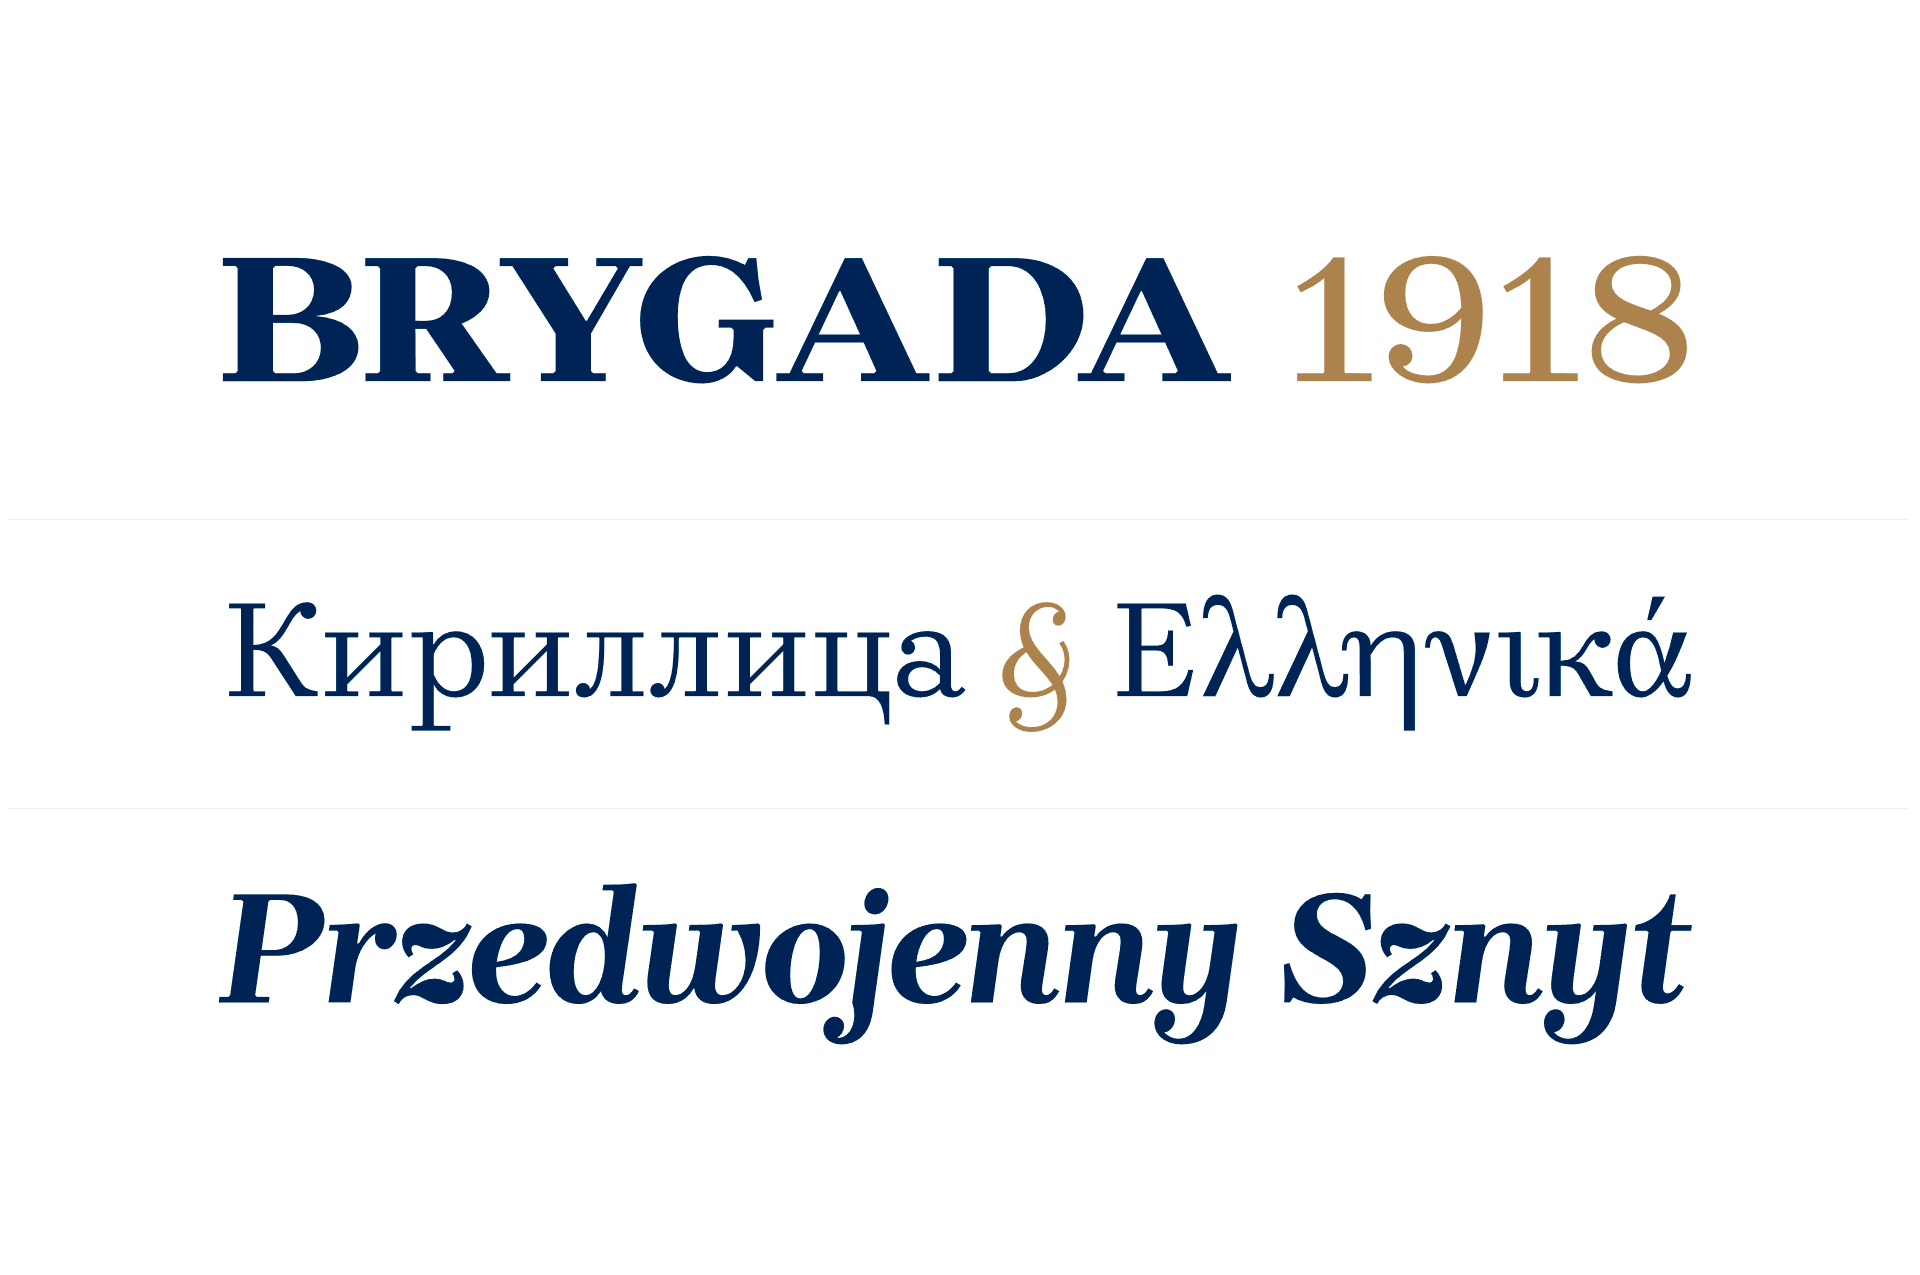 Ejemplo de fuente Brygada 1918 Regular